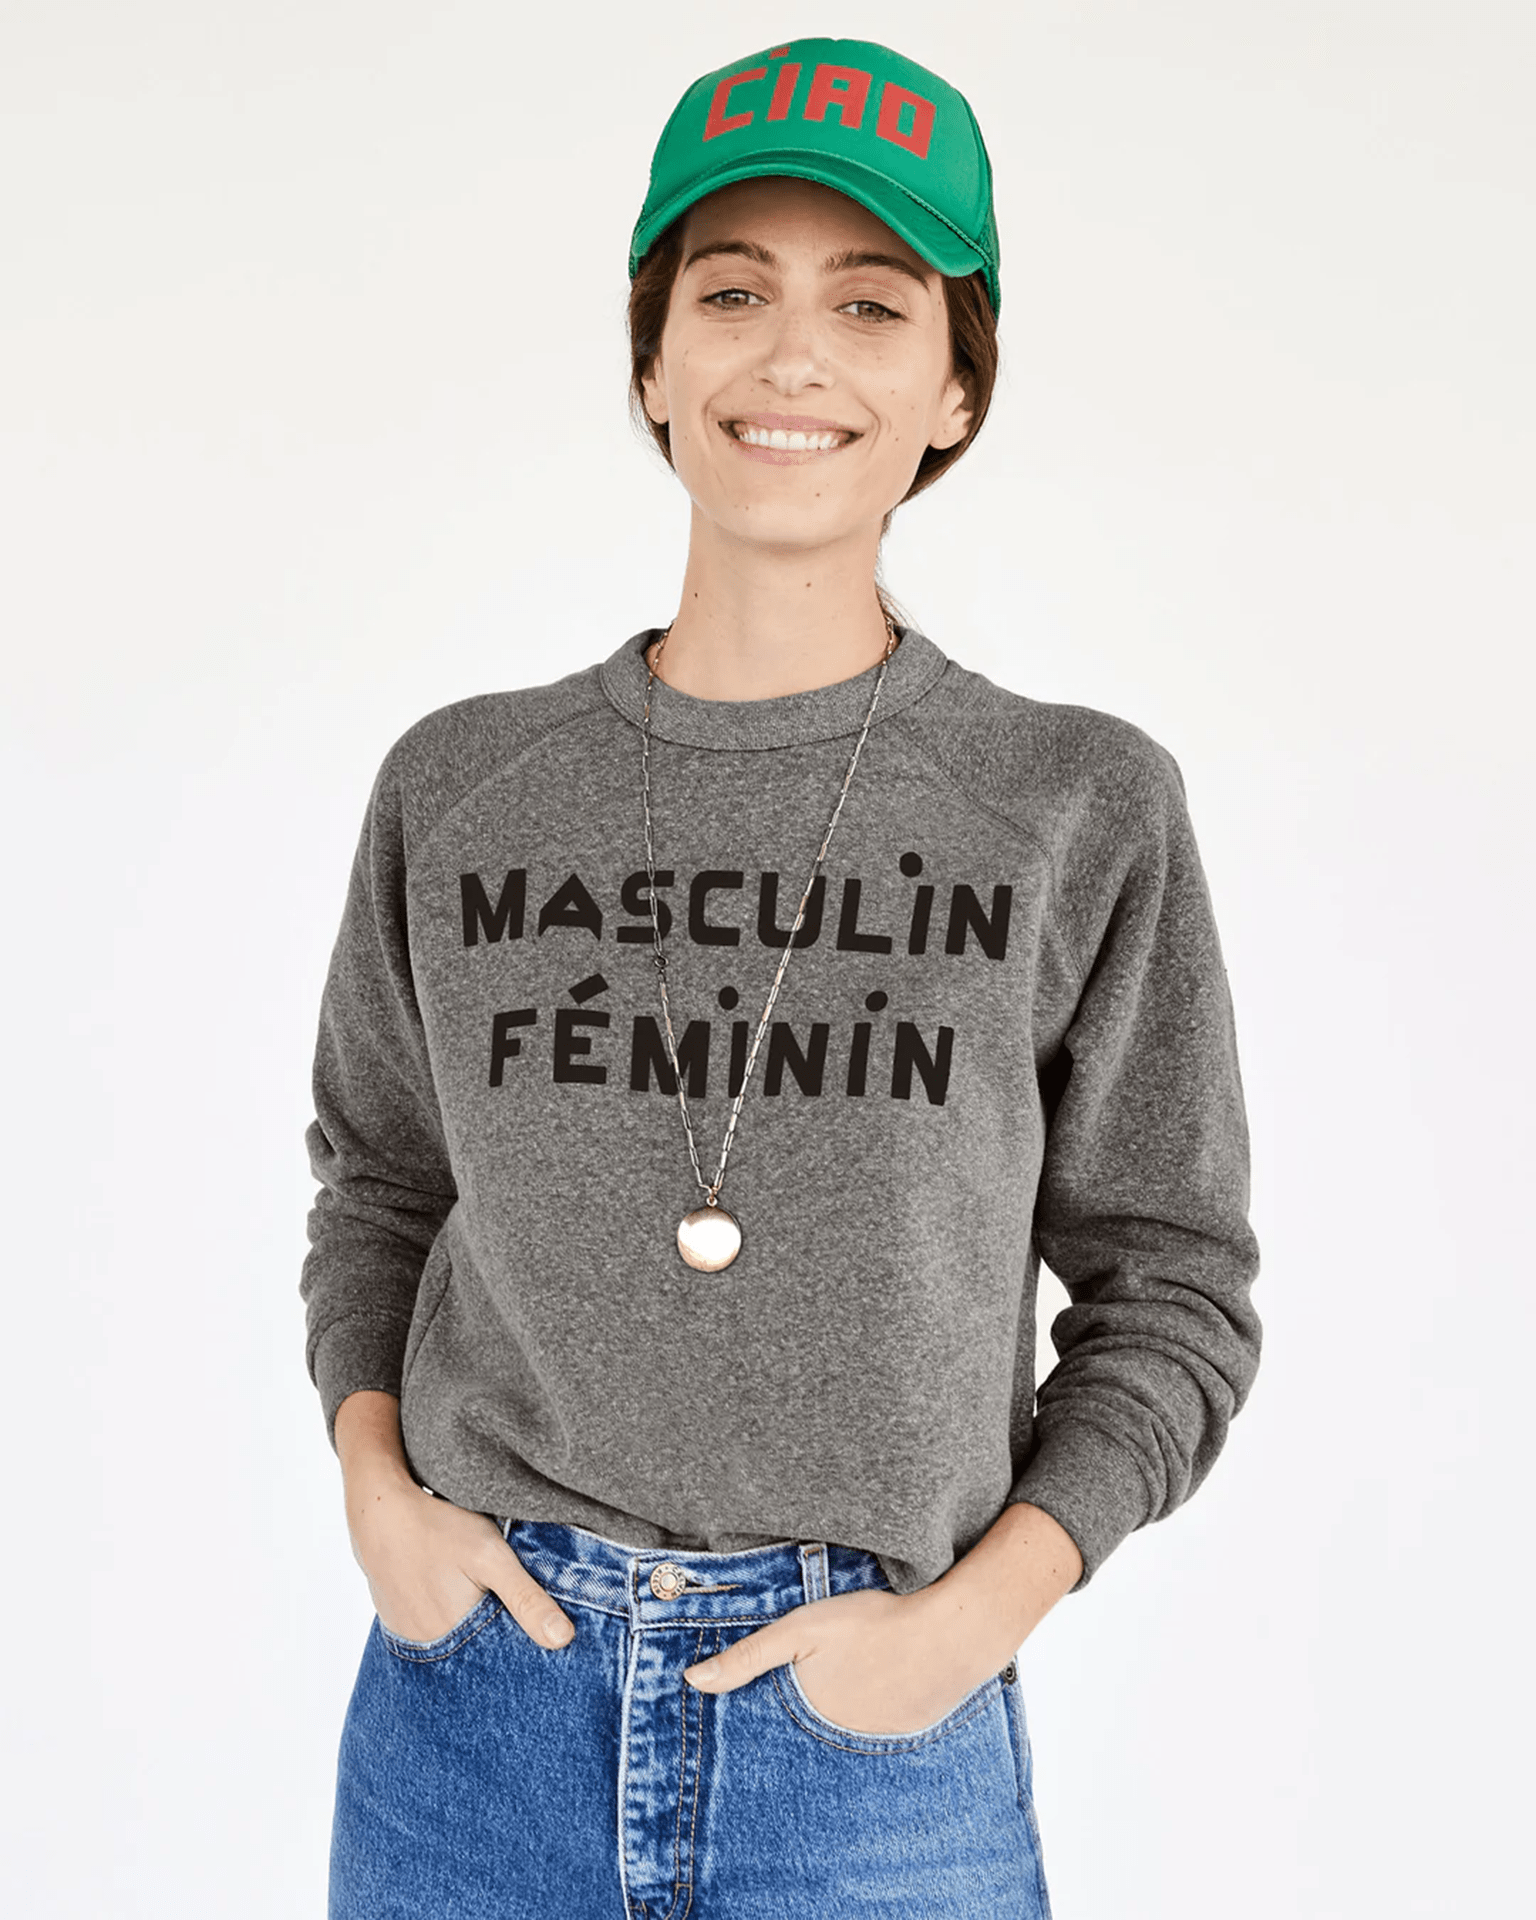 Masculin Feminin Sweatshirt in Grey w/ Black